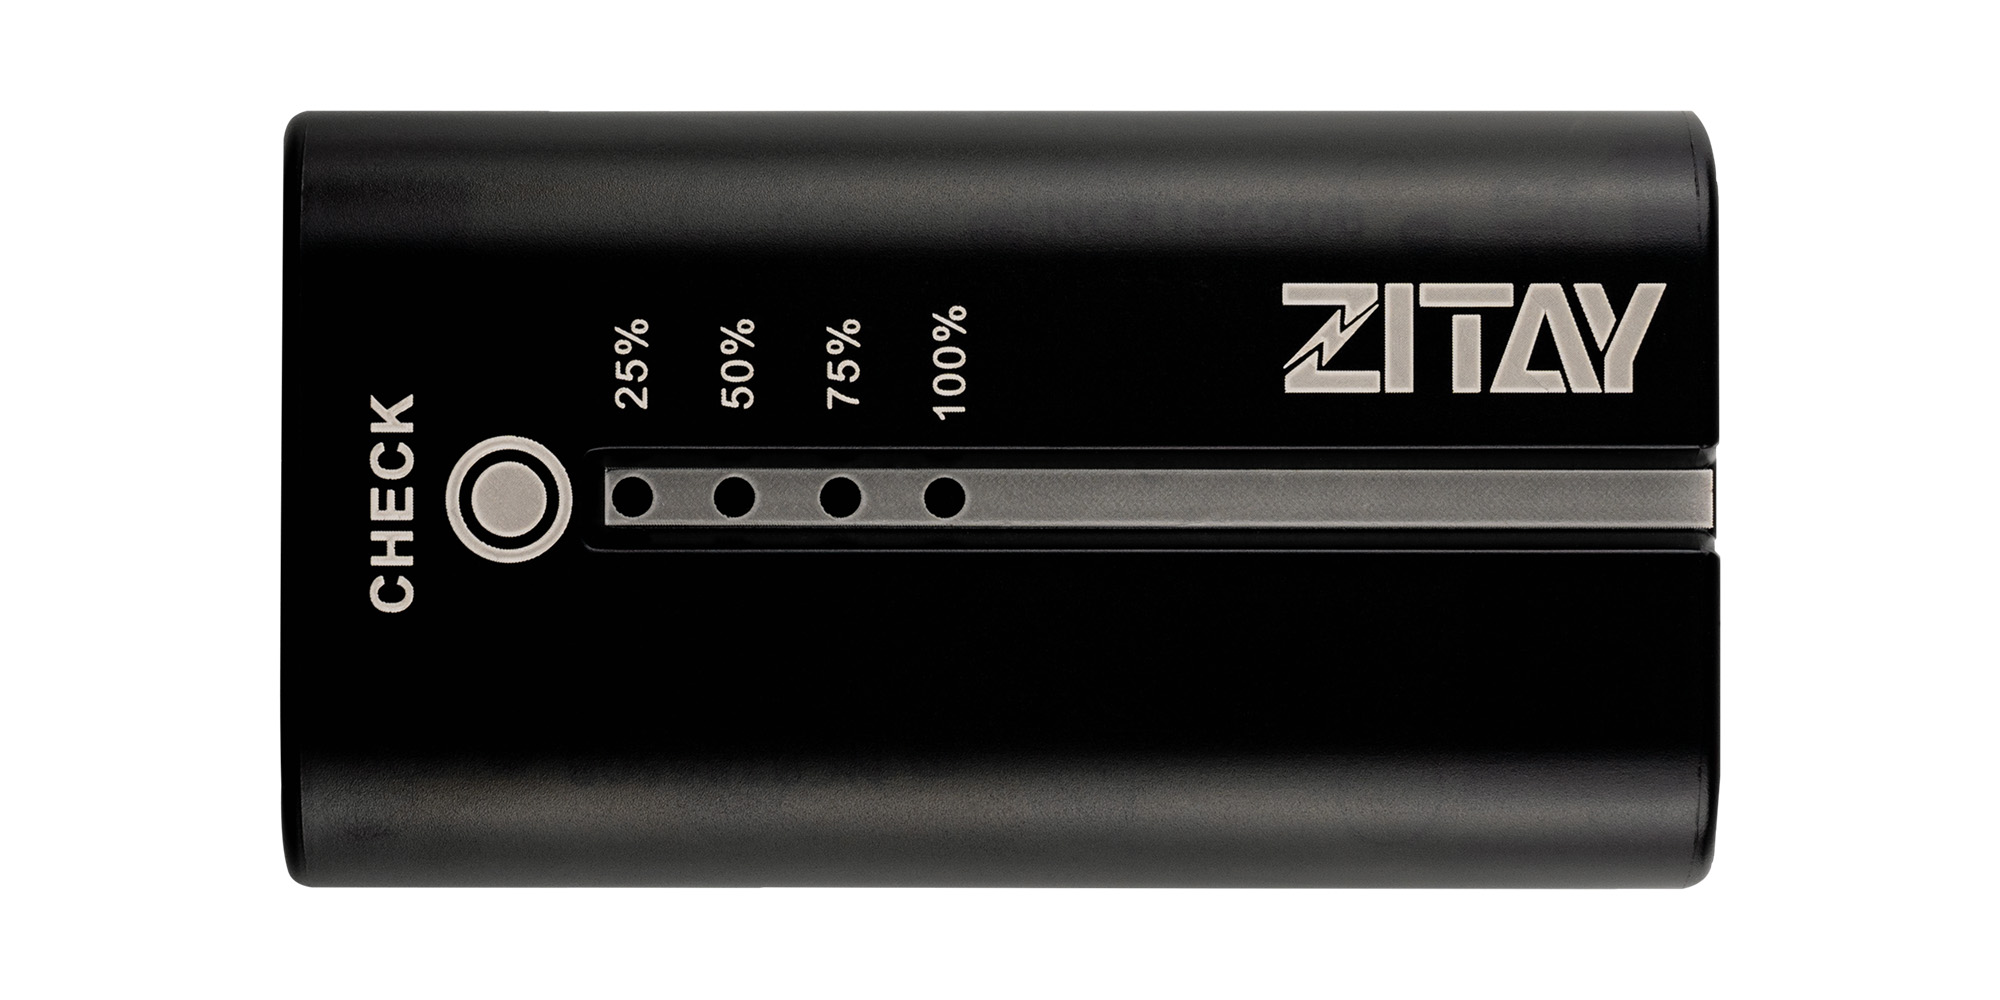 Akumulator Zitay zamiennik NP-F550 - Wskaźnik poziomu naładowania